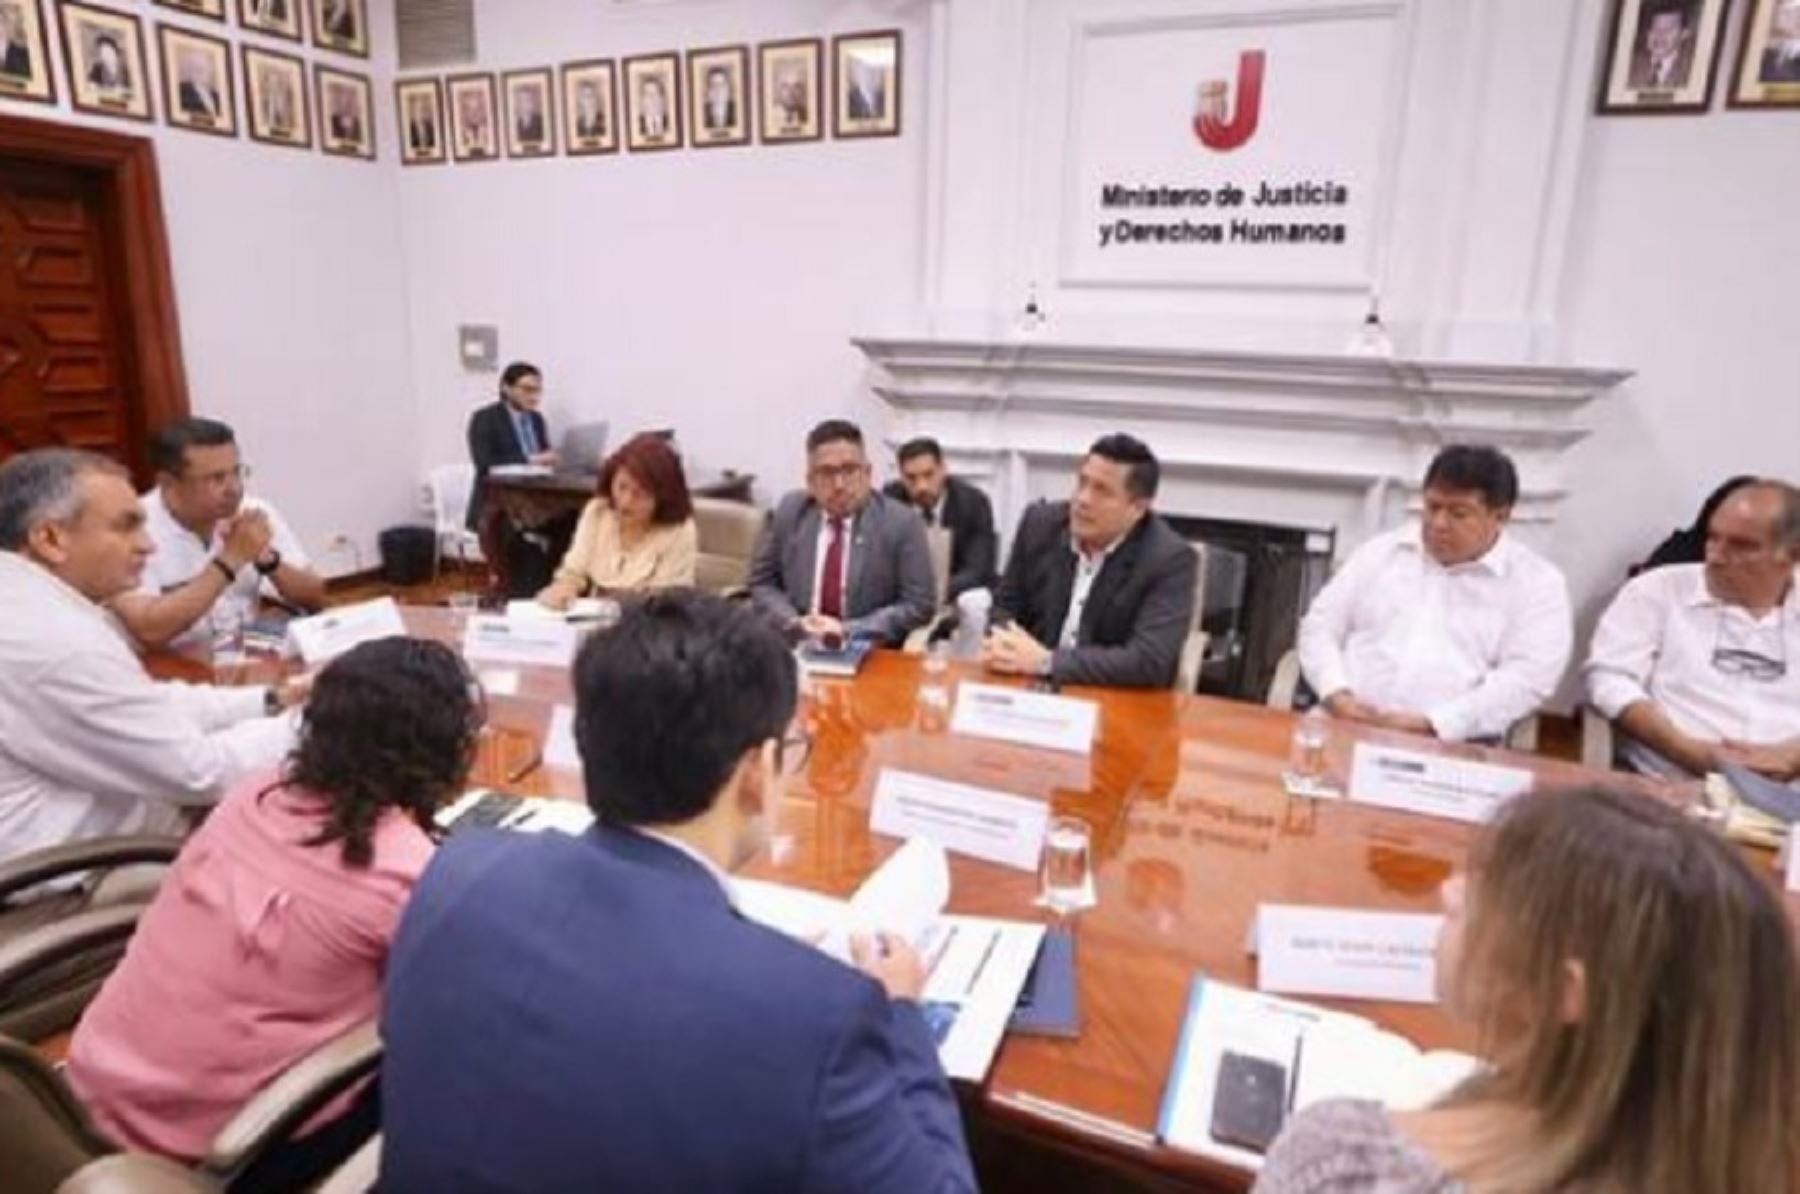 Como parte de la política de implementación de mesas de diálogo orientadas a entregar una propuesta para el desarrollo de las regiones, el titular del Ministerio de Justicia y Derechos Humanos, José Tello Alfaro, encabezó una reunión de trabajo en la que participaron ministros de Estado y autoridades de la región Lima.